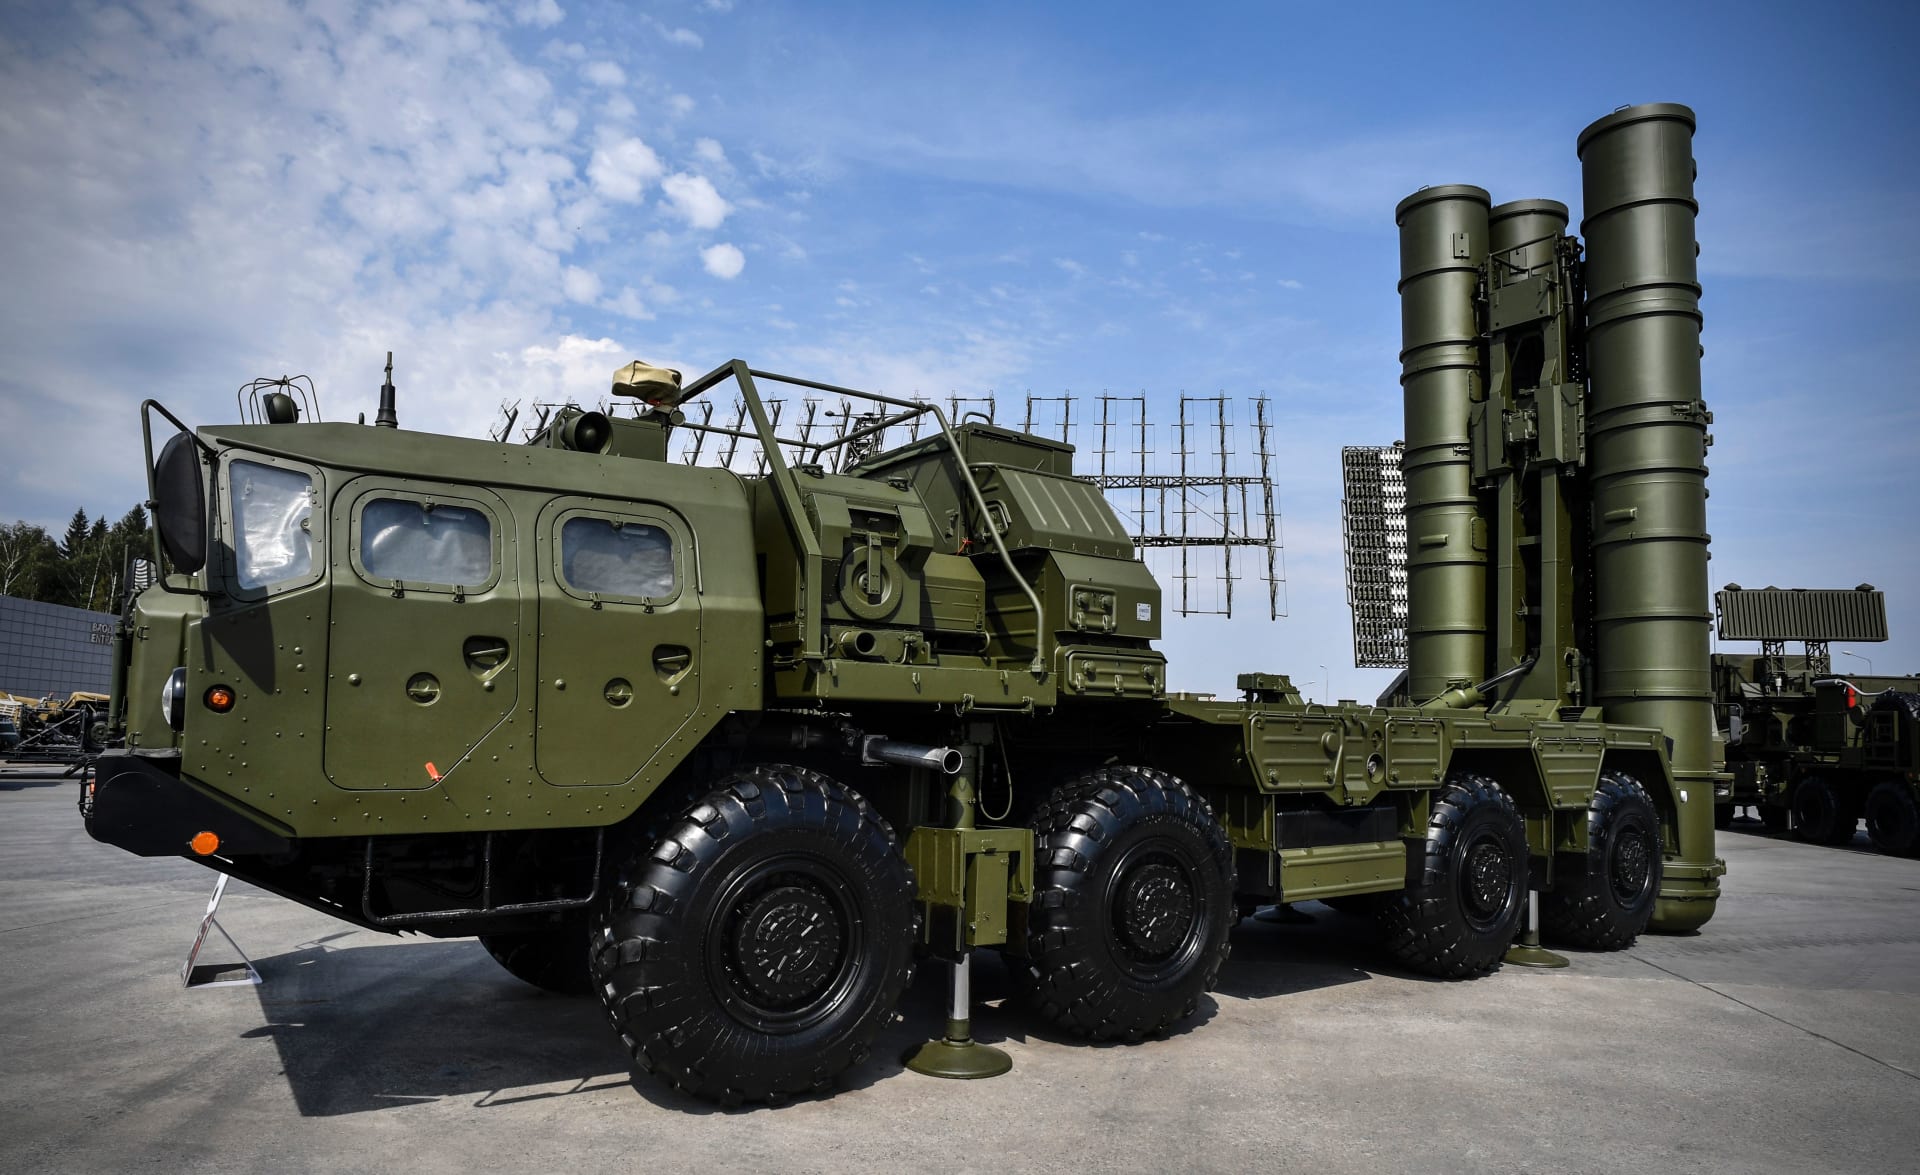 قطر تسعى للحصول على صواريخ "إس-400" من روسيا.. ووزير خارجيتها: "لا شأن للسعودية"